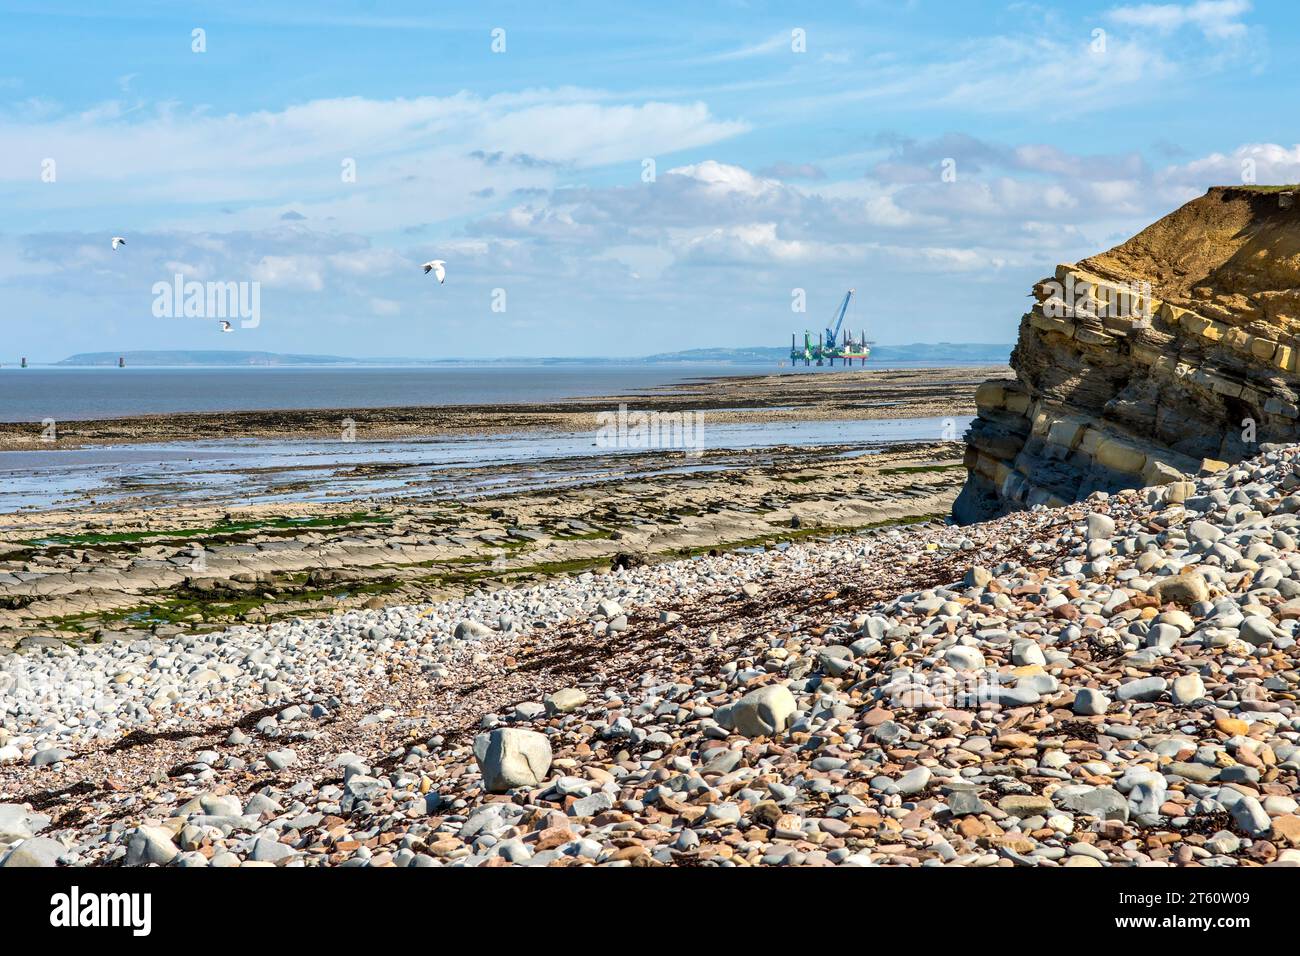 Kilve Beach et côte rocheuse, à Kilve, Quantocks, Somerset, Royaume-Uni par une journée ensoleillée. La plage est bien connue pour trouver des fossiles. Banque D'Images